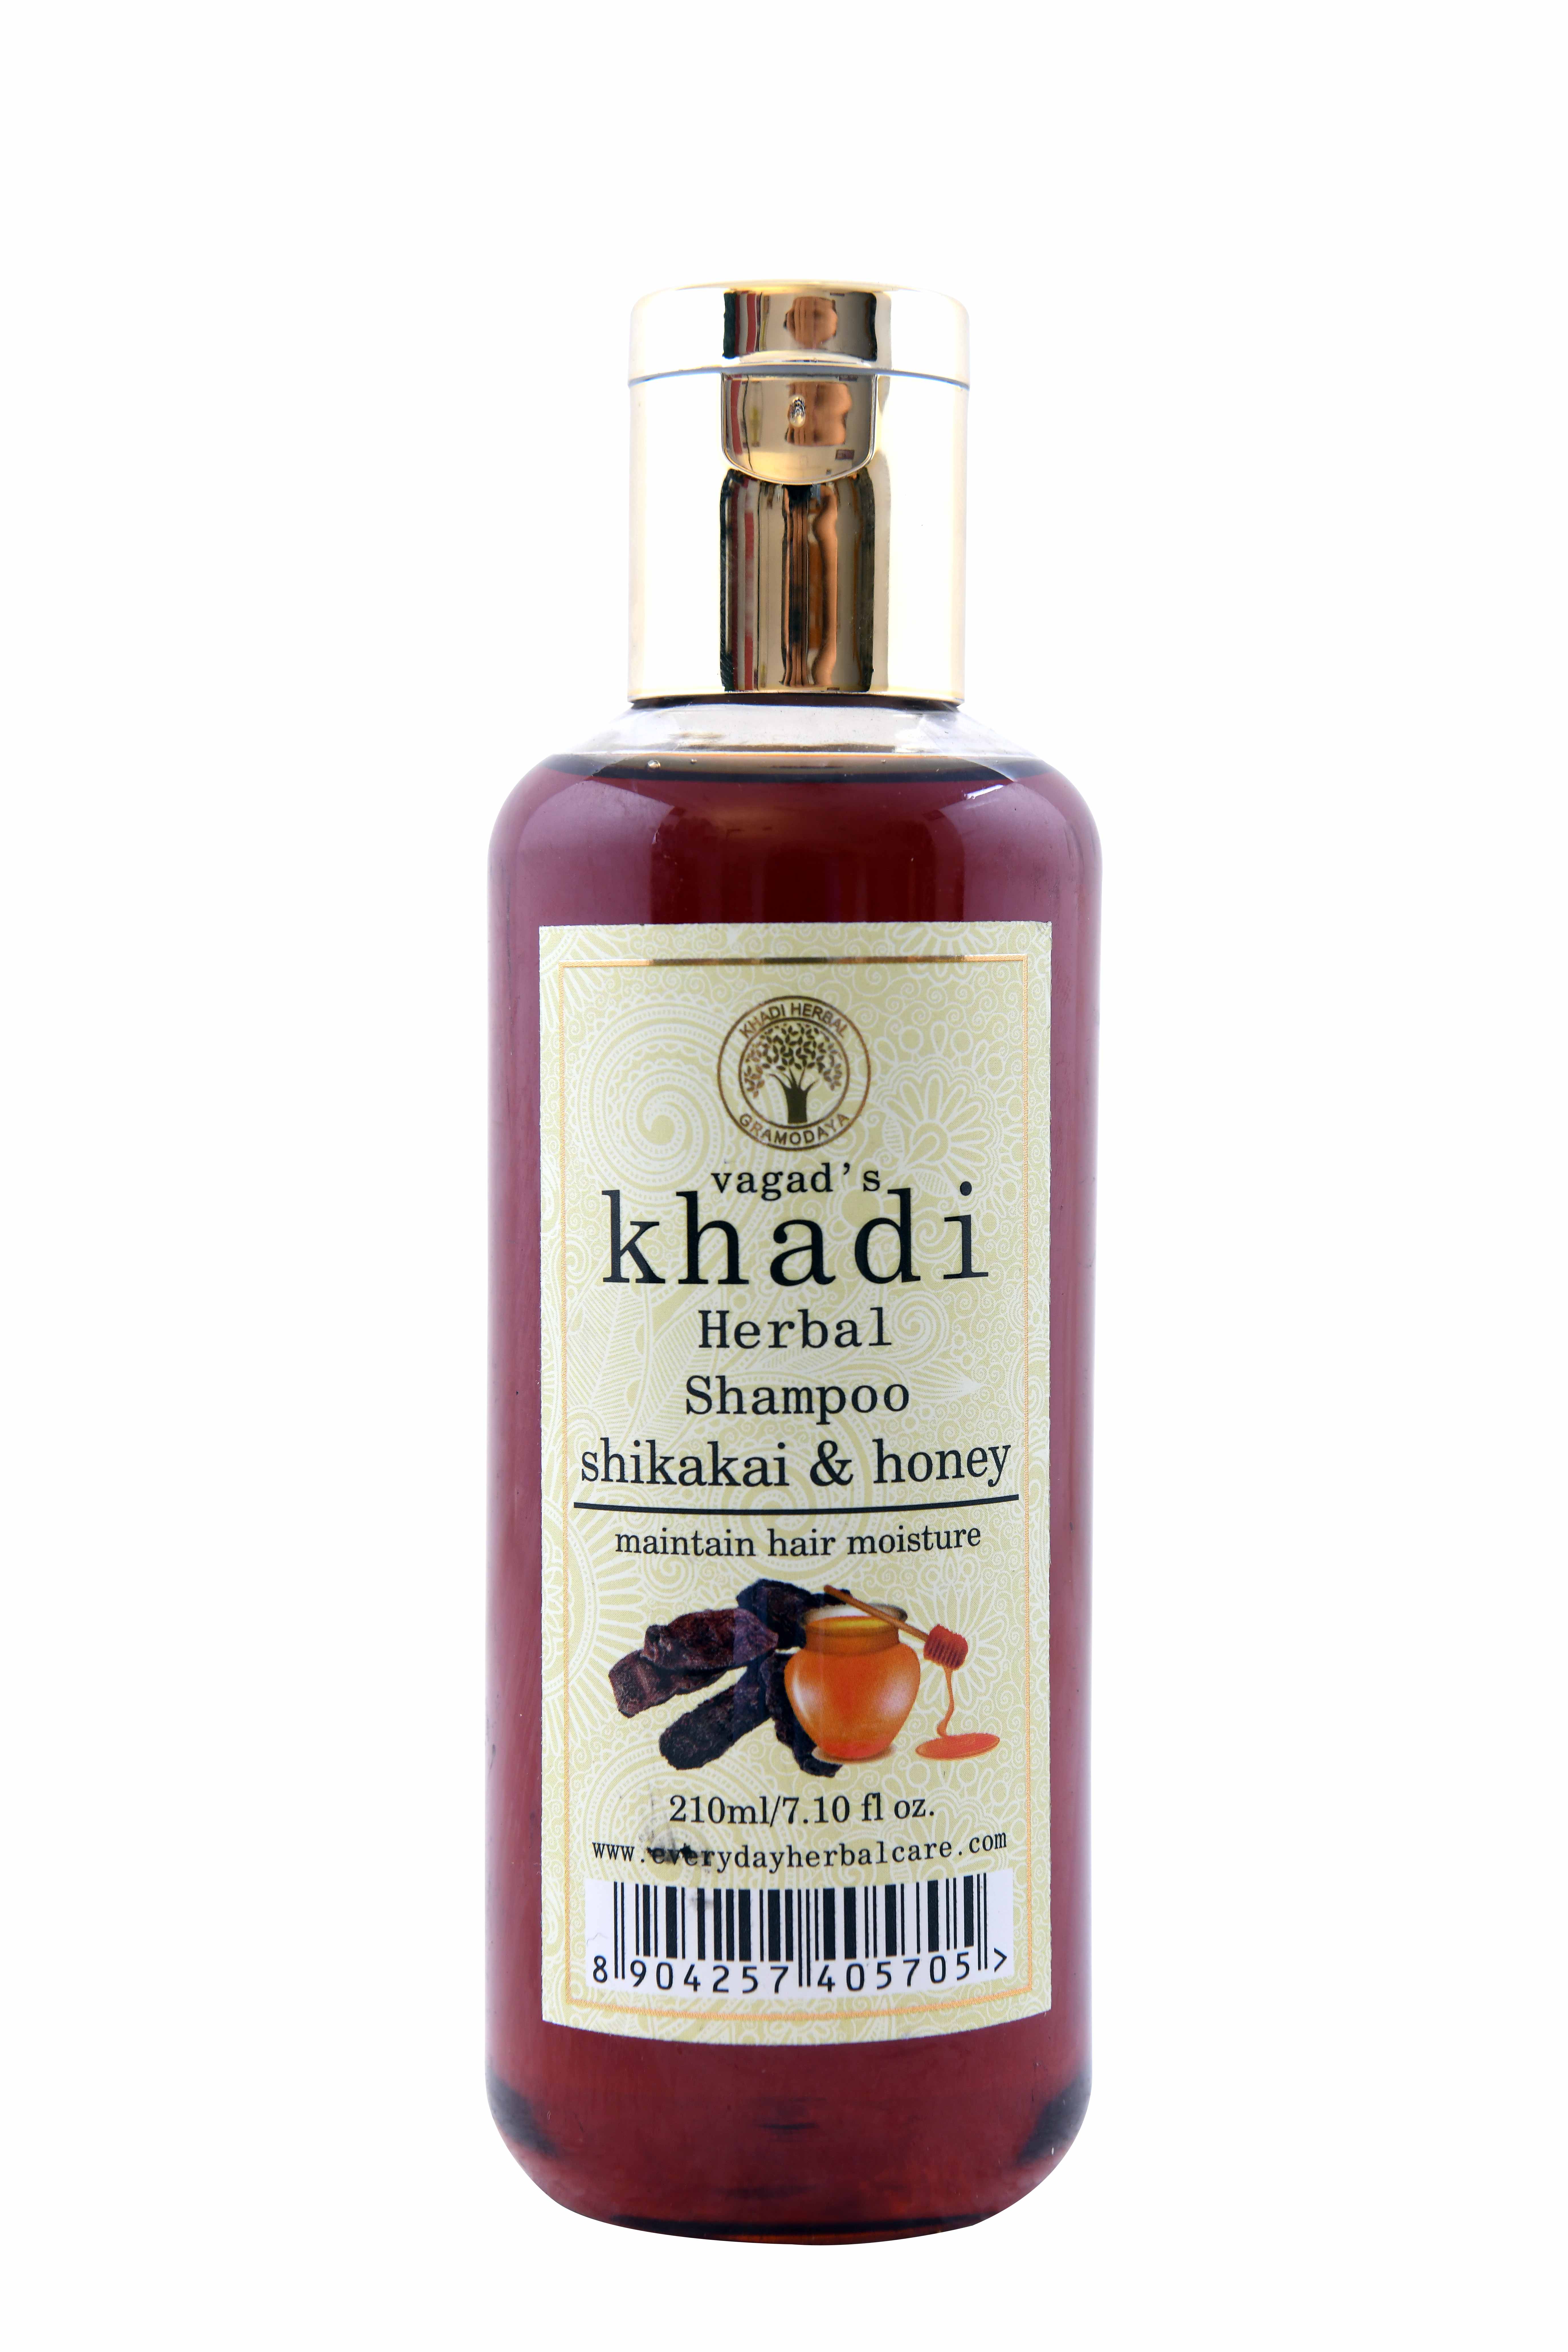 Buy Vagad's Khadi Shikakai And Honey Shampoo Online at Best Price in 2021